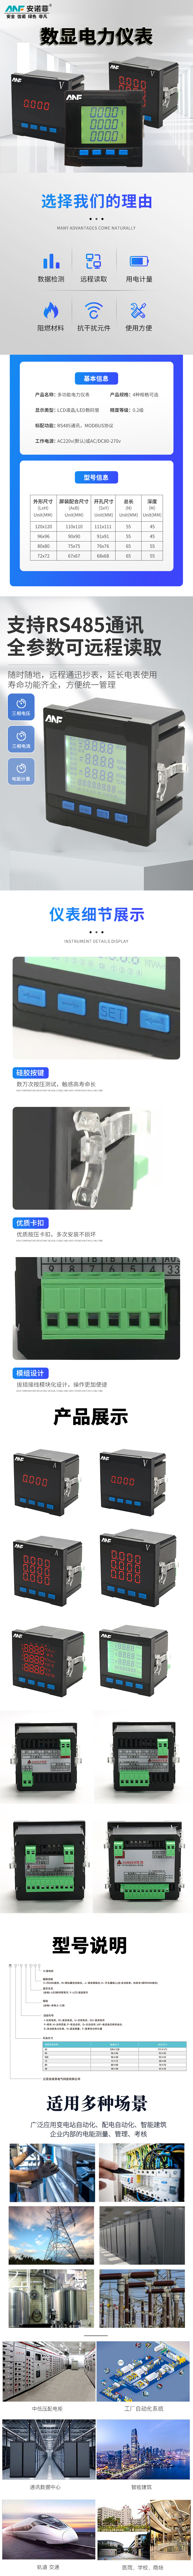 多功能表 测量三相电压 大屏幕LCD全中文菜单显示